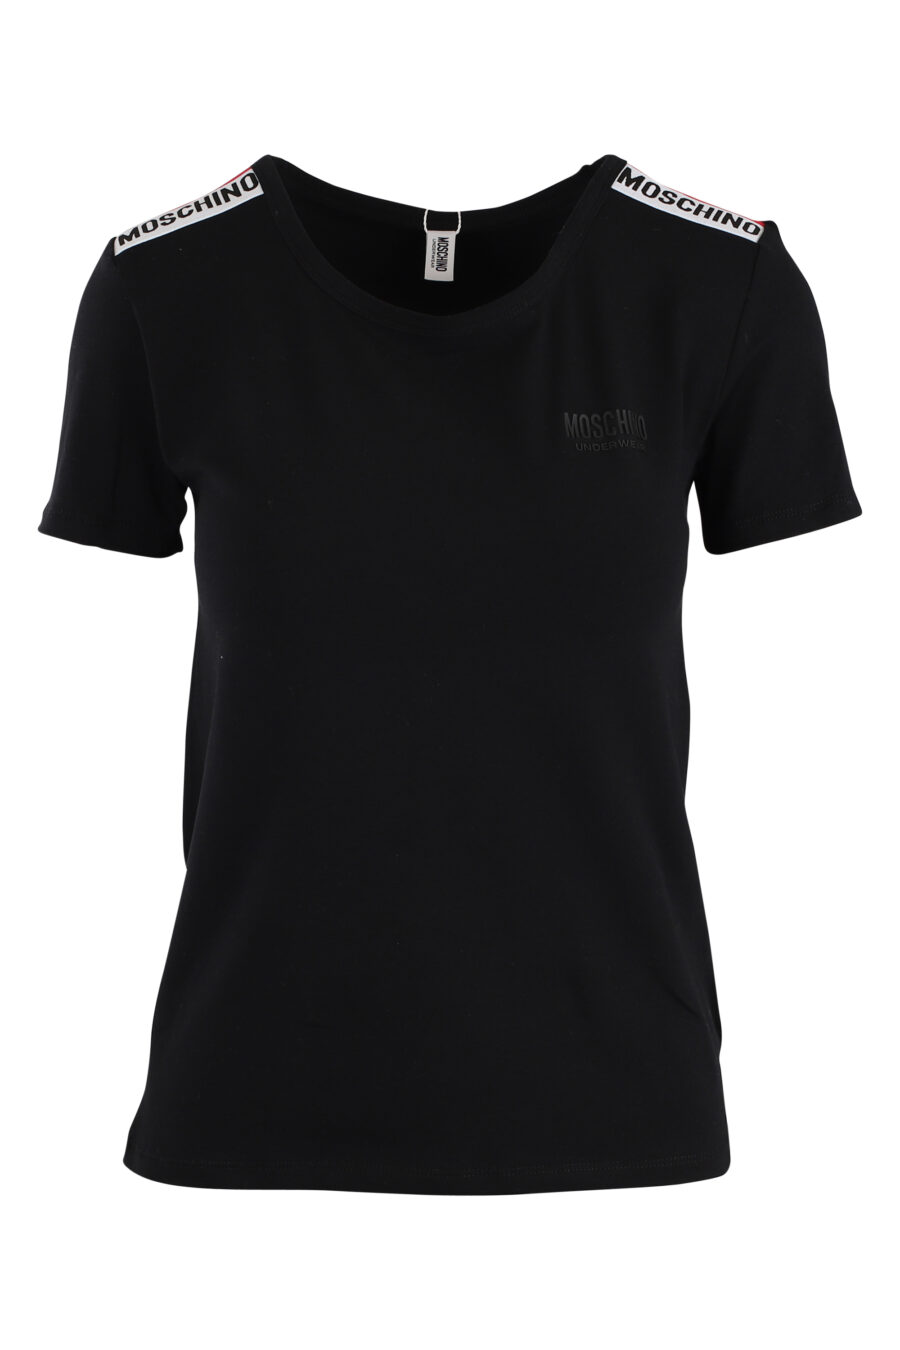 T-shirt preta com logótipo de fita nas mangas - IMG 5516